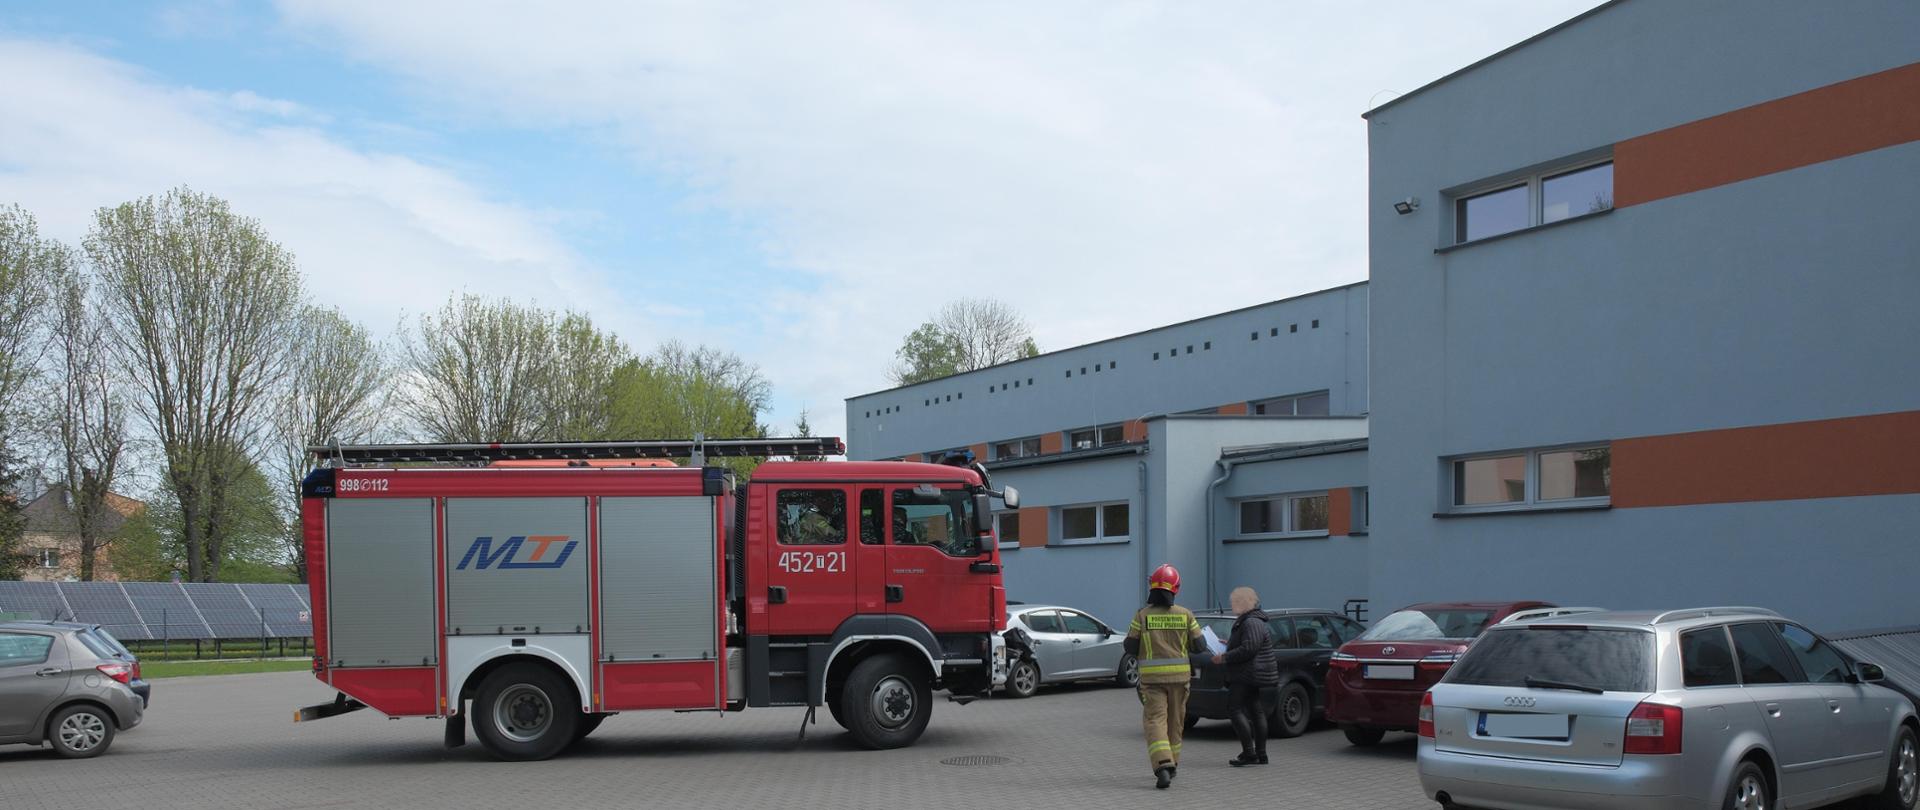 Na pierwszym planie wóz strażacki stojący bokiem pośród samochodów osobowych na parkingu za budynkiem szkoły.